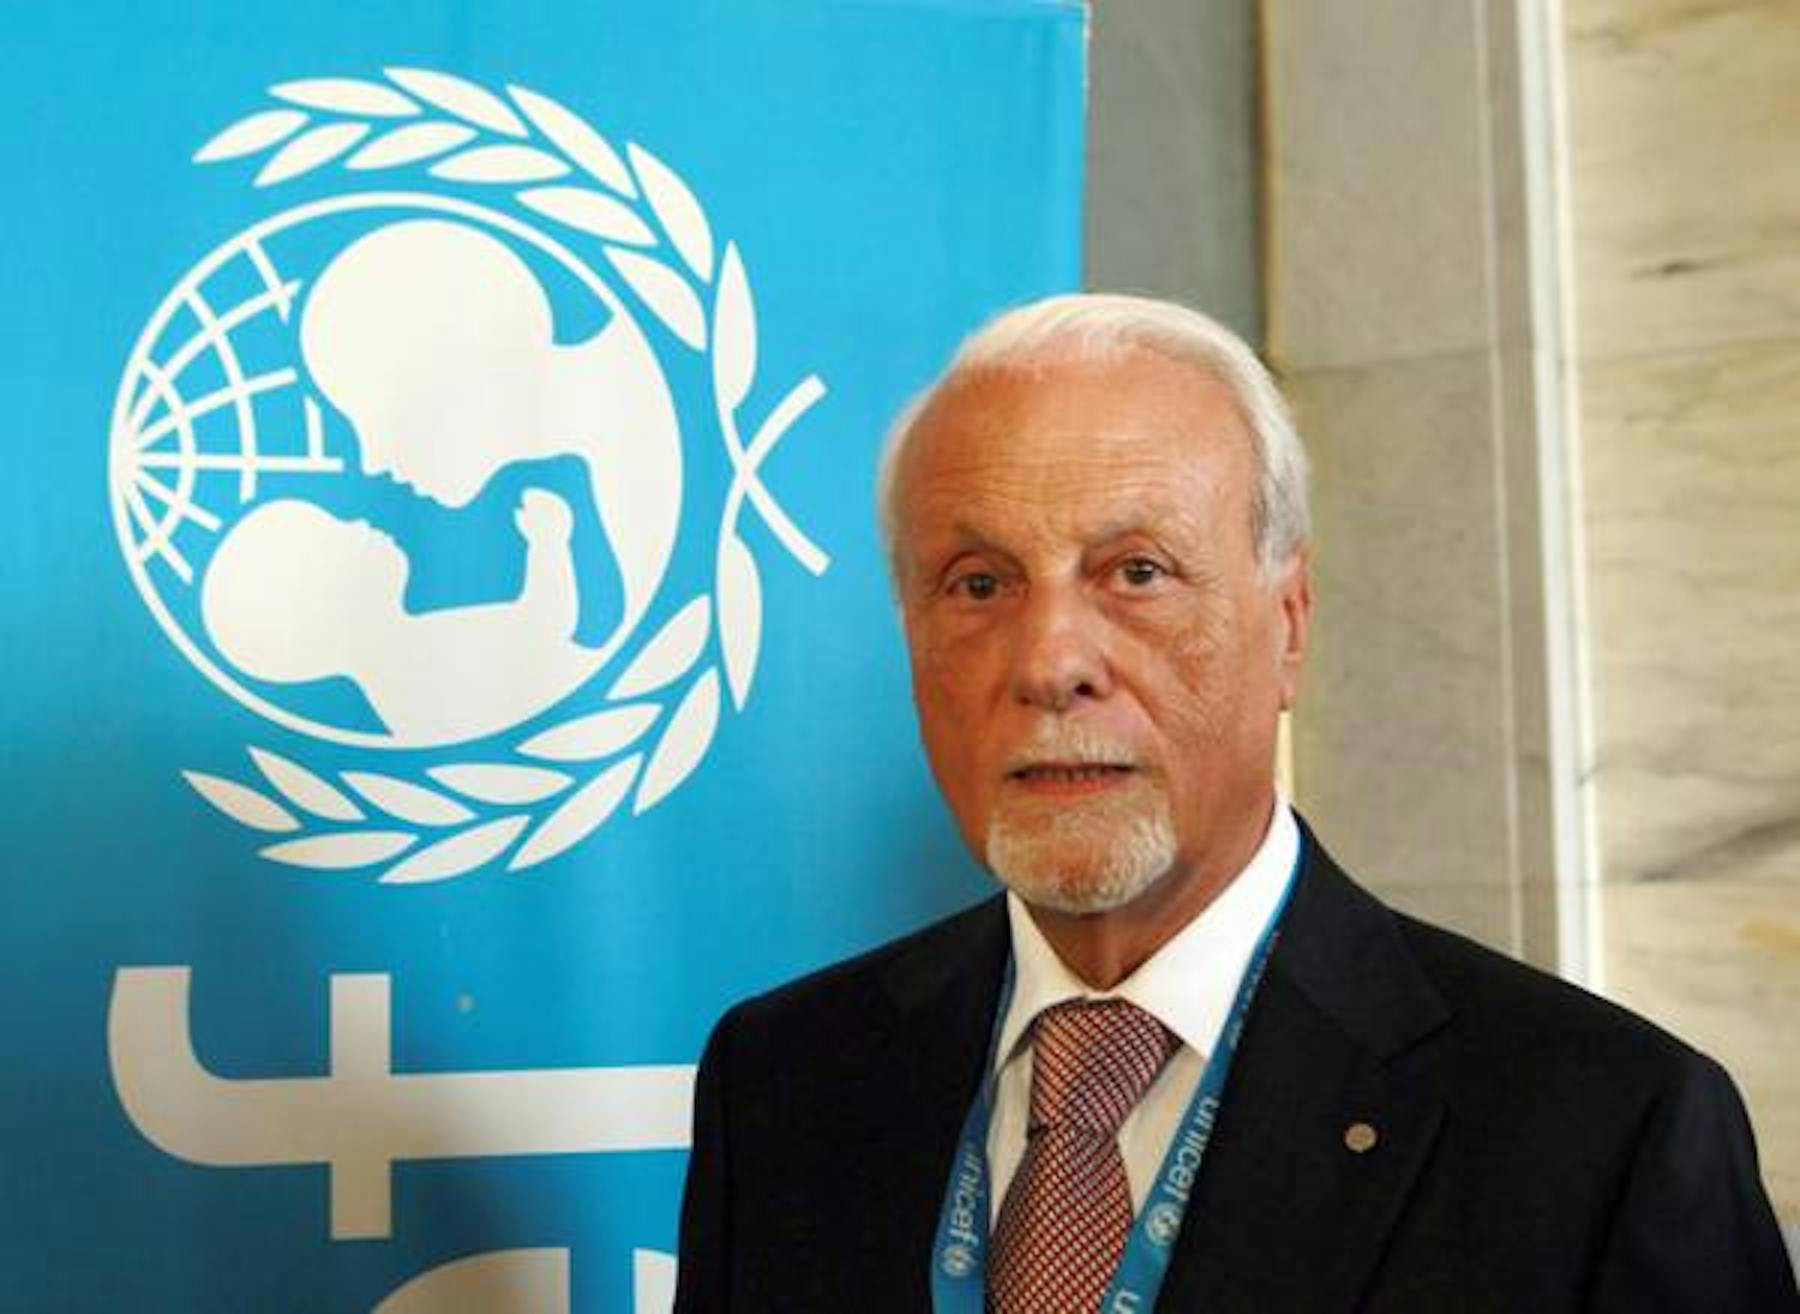 Giacomo Guerrera, confermato nella carica di Presidente dell'UNICEF Italia per il triennio 2014-2016 